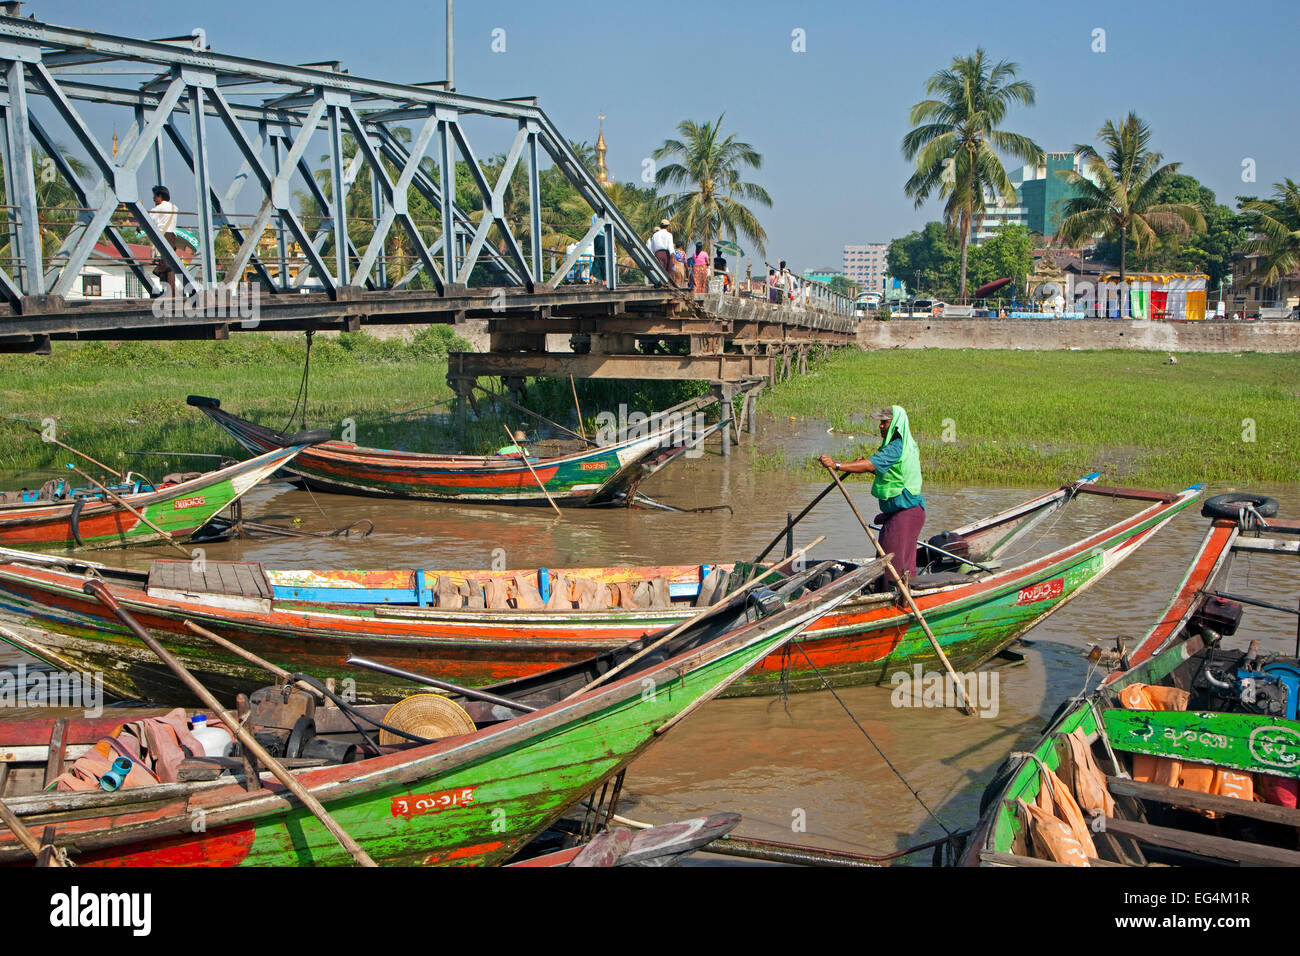 Bunten traditionellen Longtail Boote im Fluss Yangon, Yangon / Rangun, ehemalige Hauptstadt von Myanmar / Birma Stockfoto